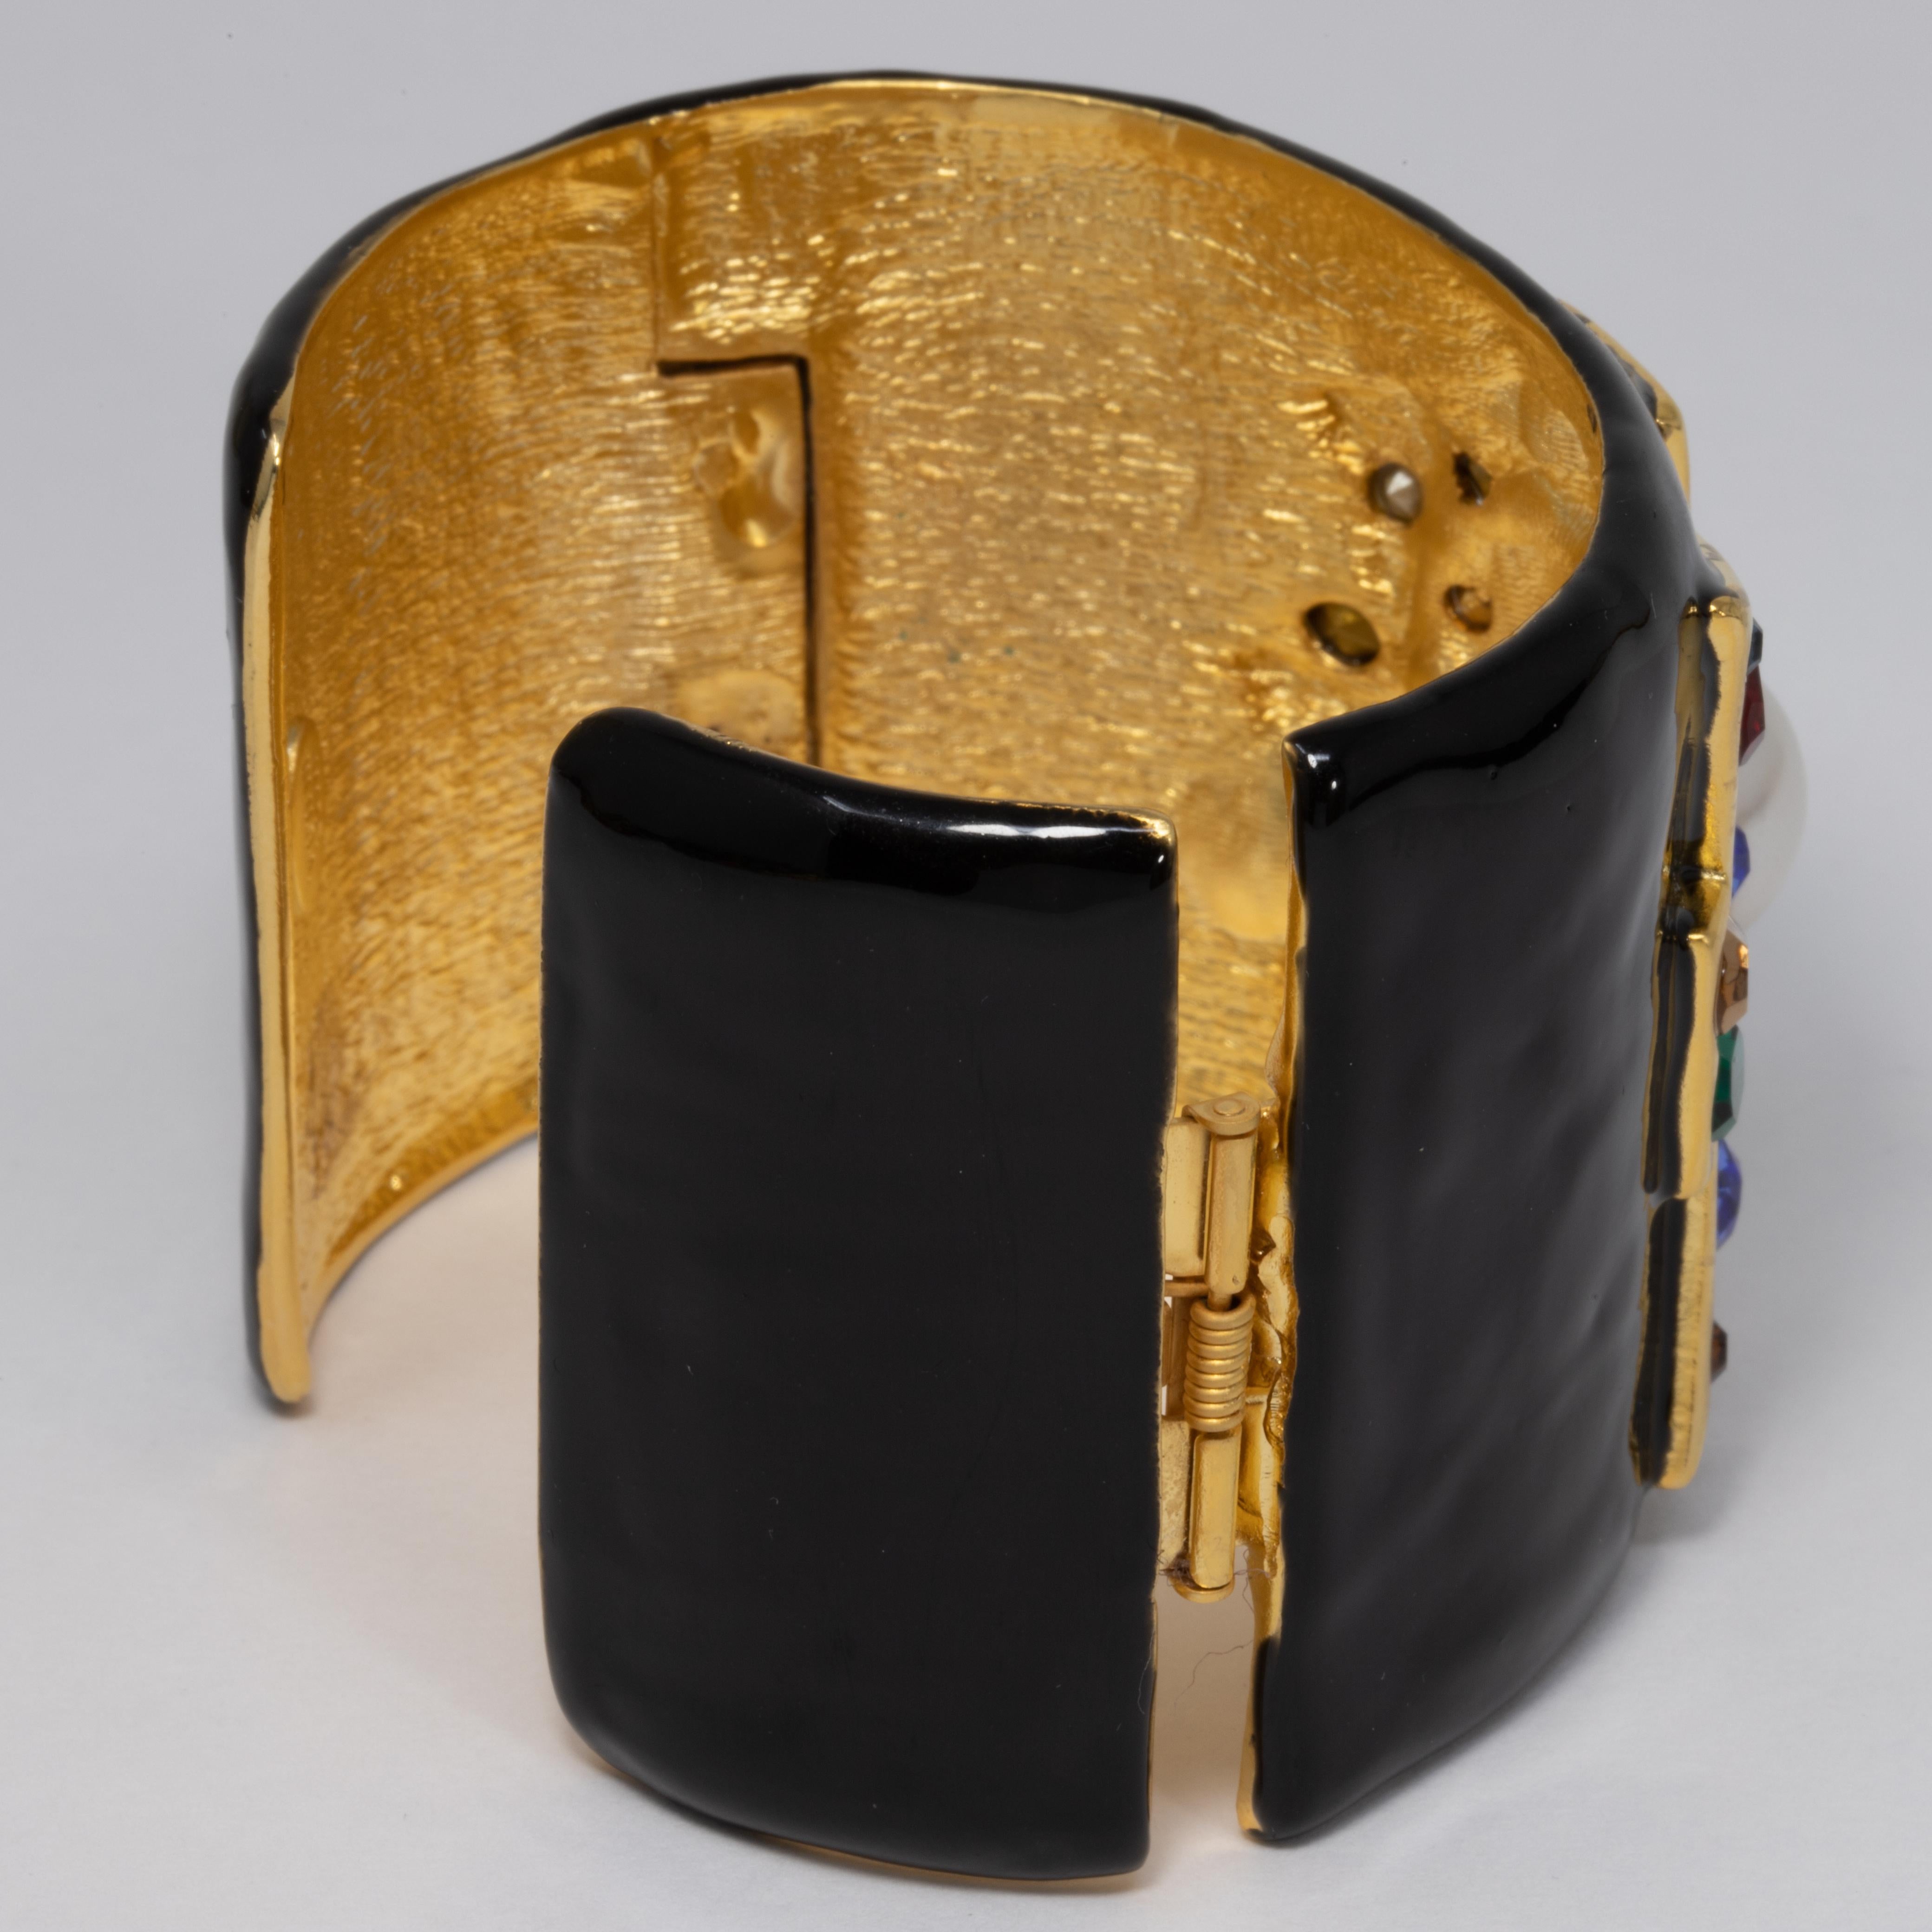 Mixed Cut KJL Kenneth Jay Lane Jeweled Maltese Cross Black Enamel Cuff Bracelet in Gold